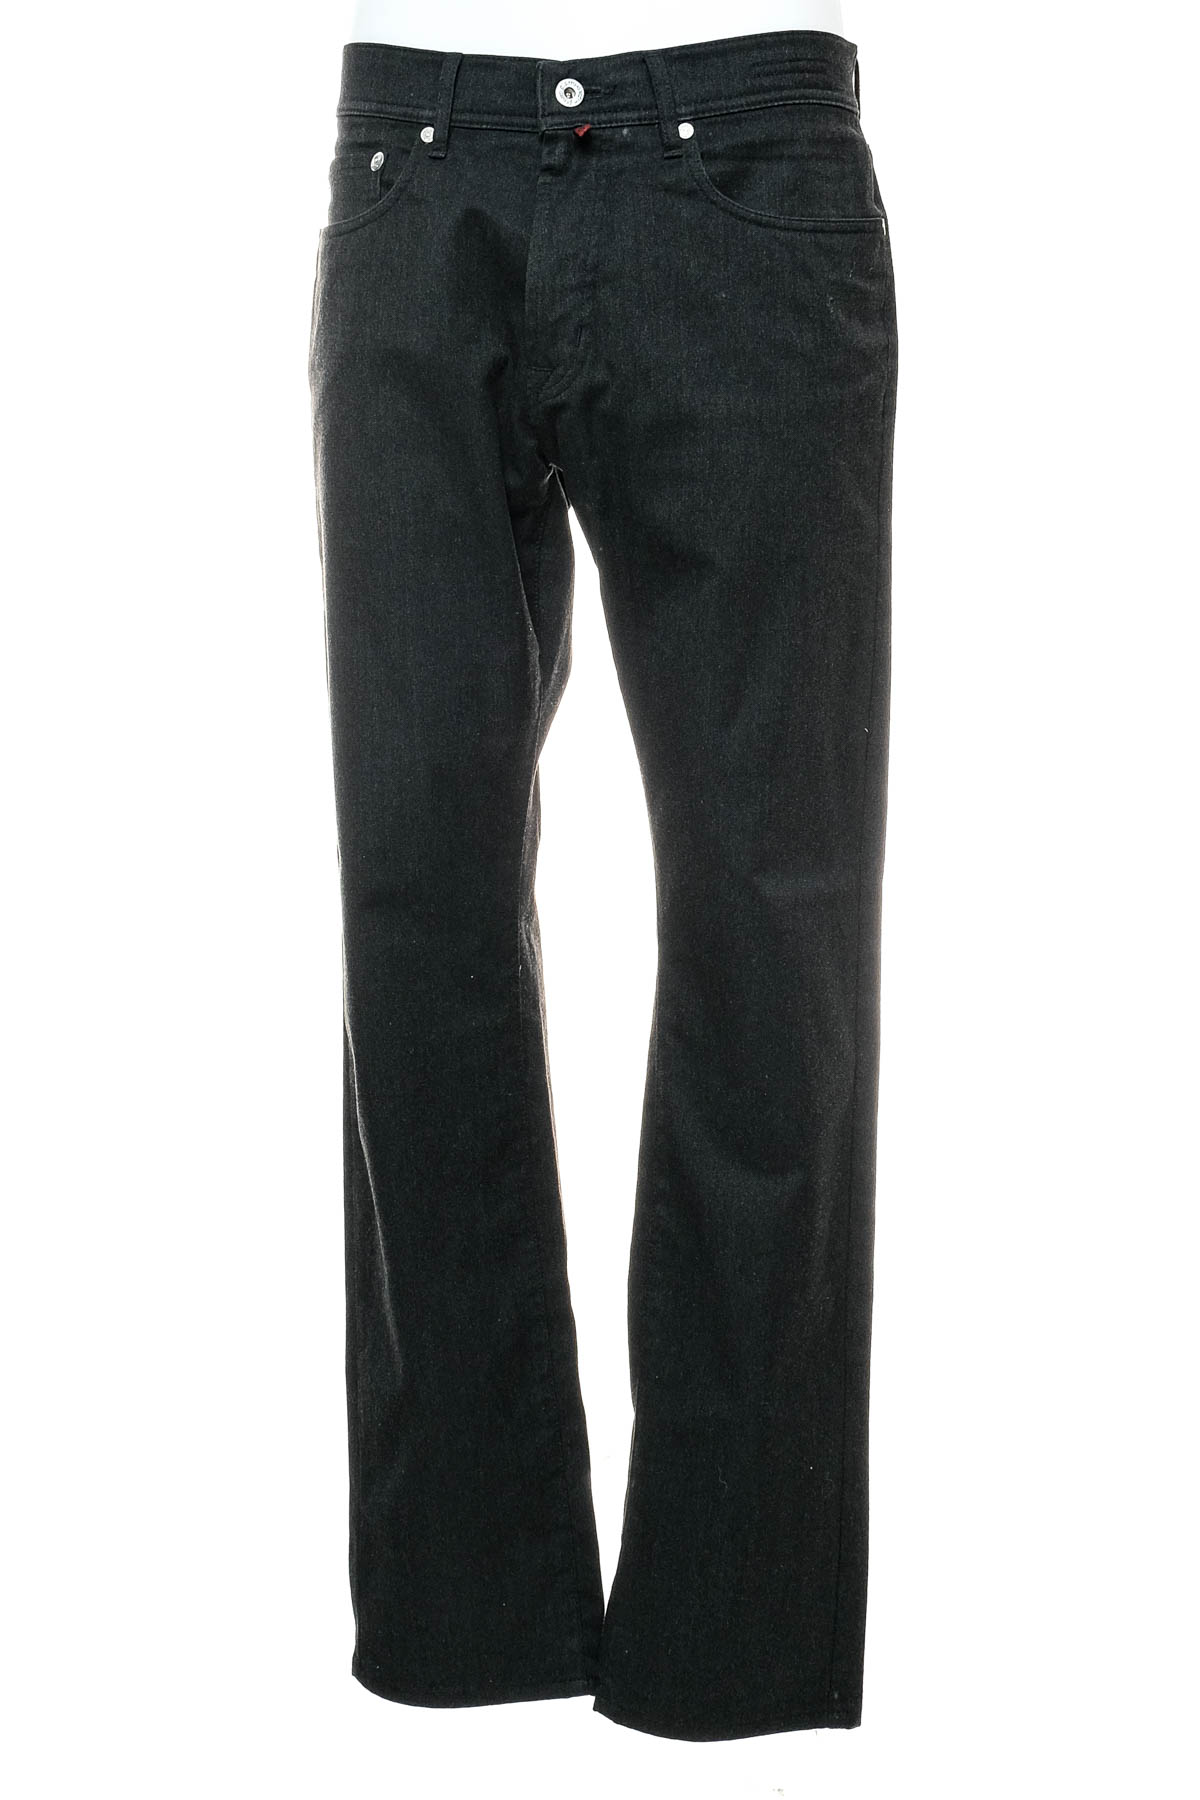 Ανδρικά παντελόνια - Pierre Cardin - 0